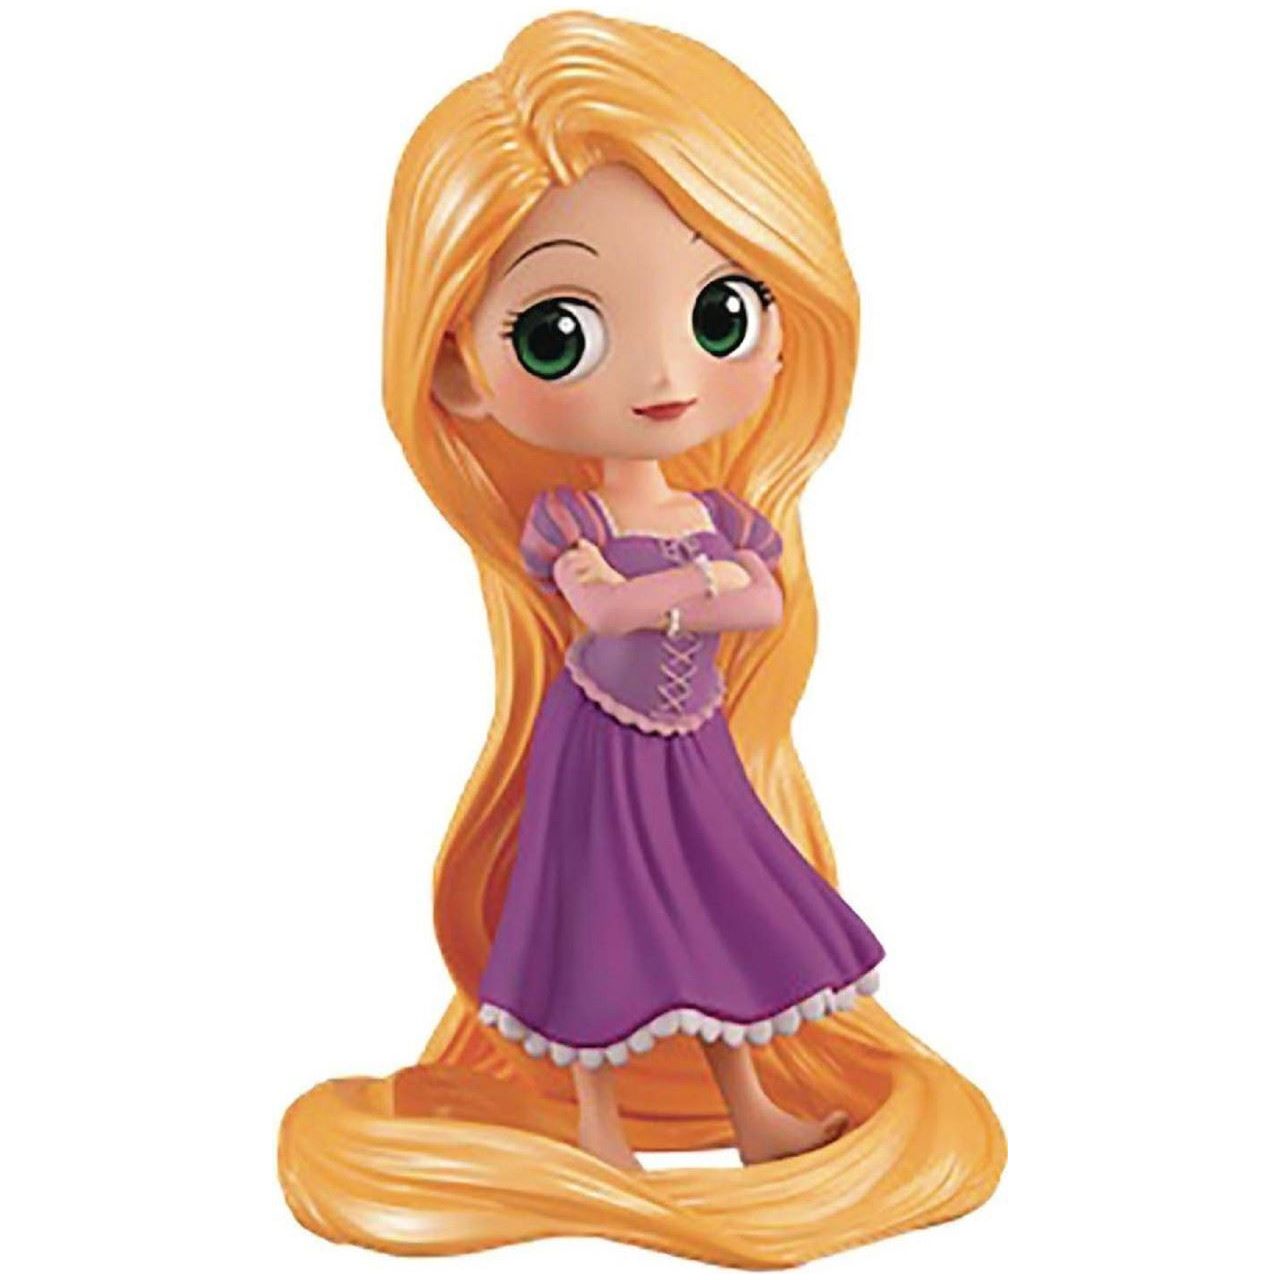 Disney Q posket Rapunzel Figure Ver. A - Partytoyz Inc